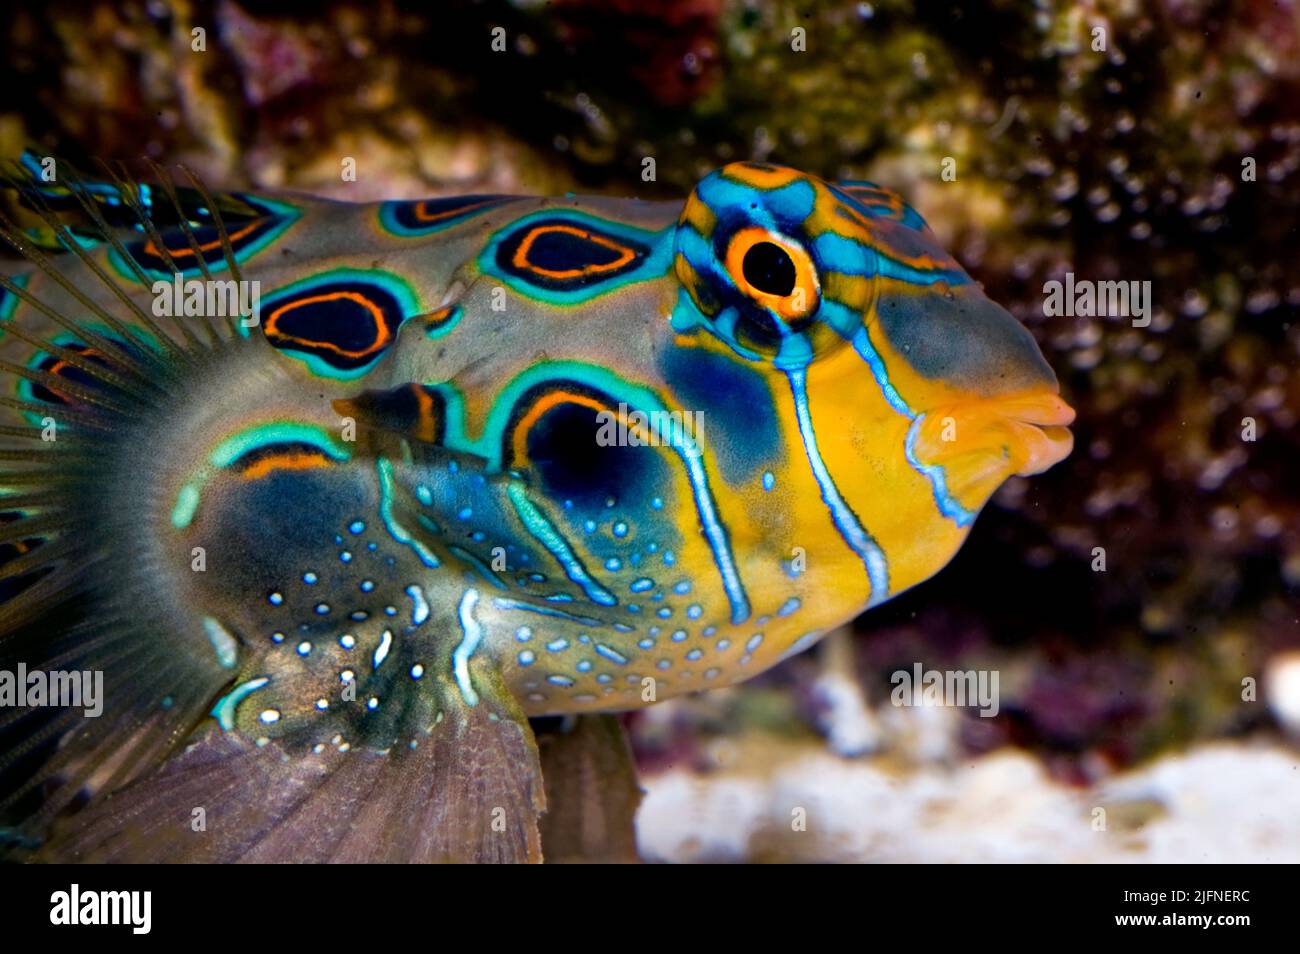 Mandarinfish (Synchiropus splendisus) Stock Photo